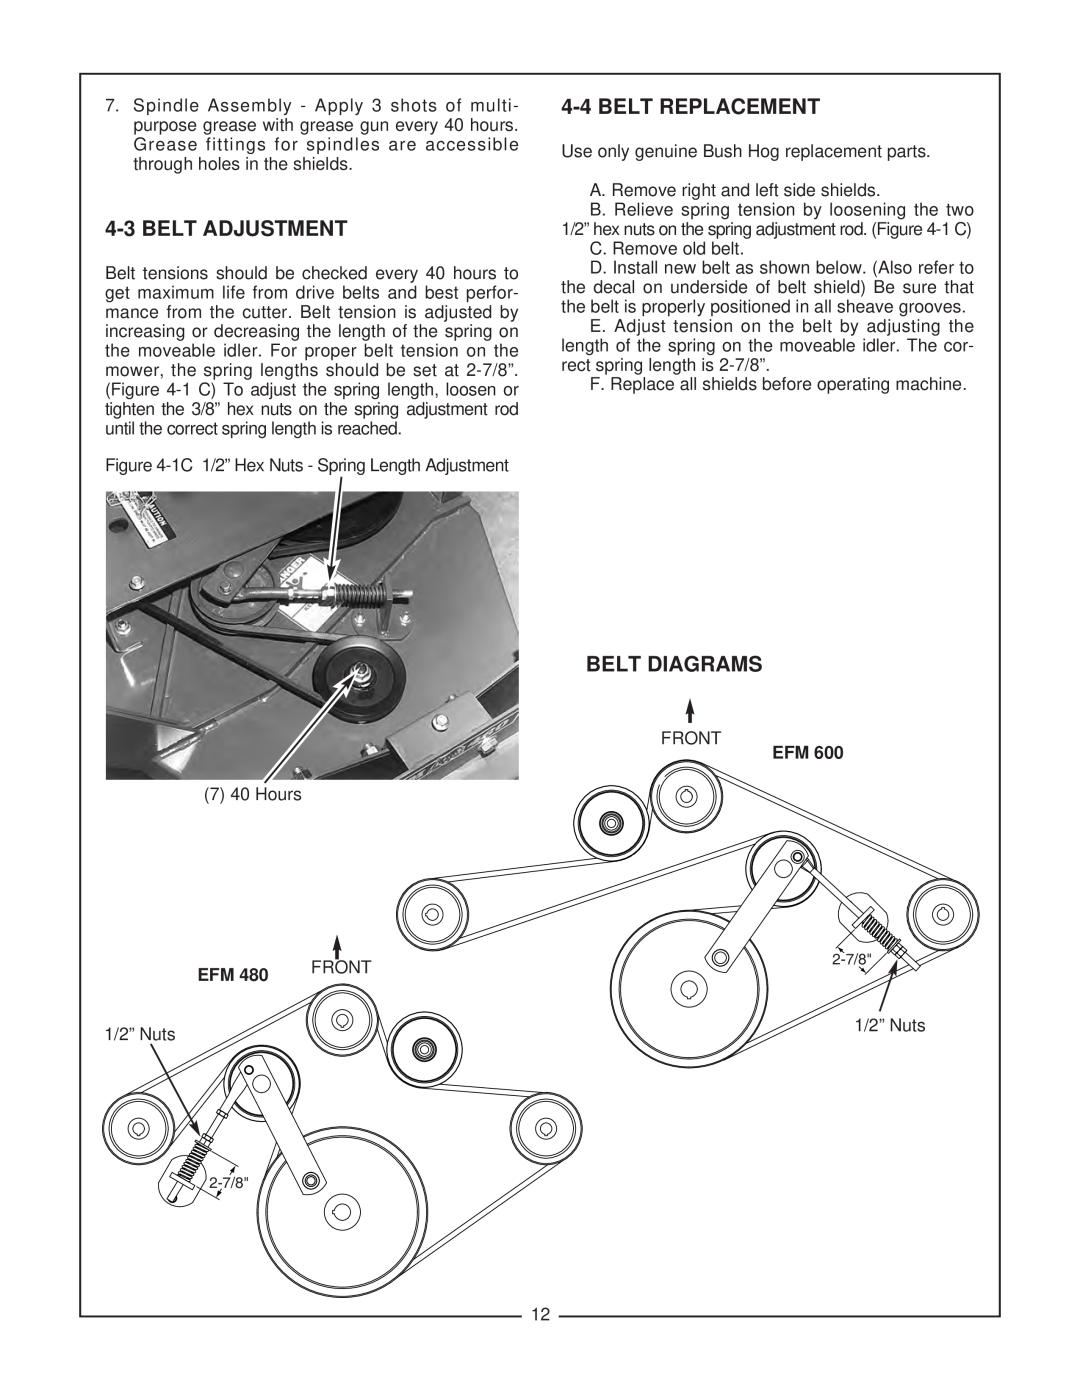 Bush Hog EFM 480/600 manual Belt Adjustment, Belt Replacement, Belt Diagrams, Front 